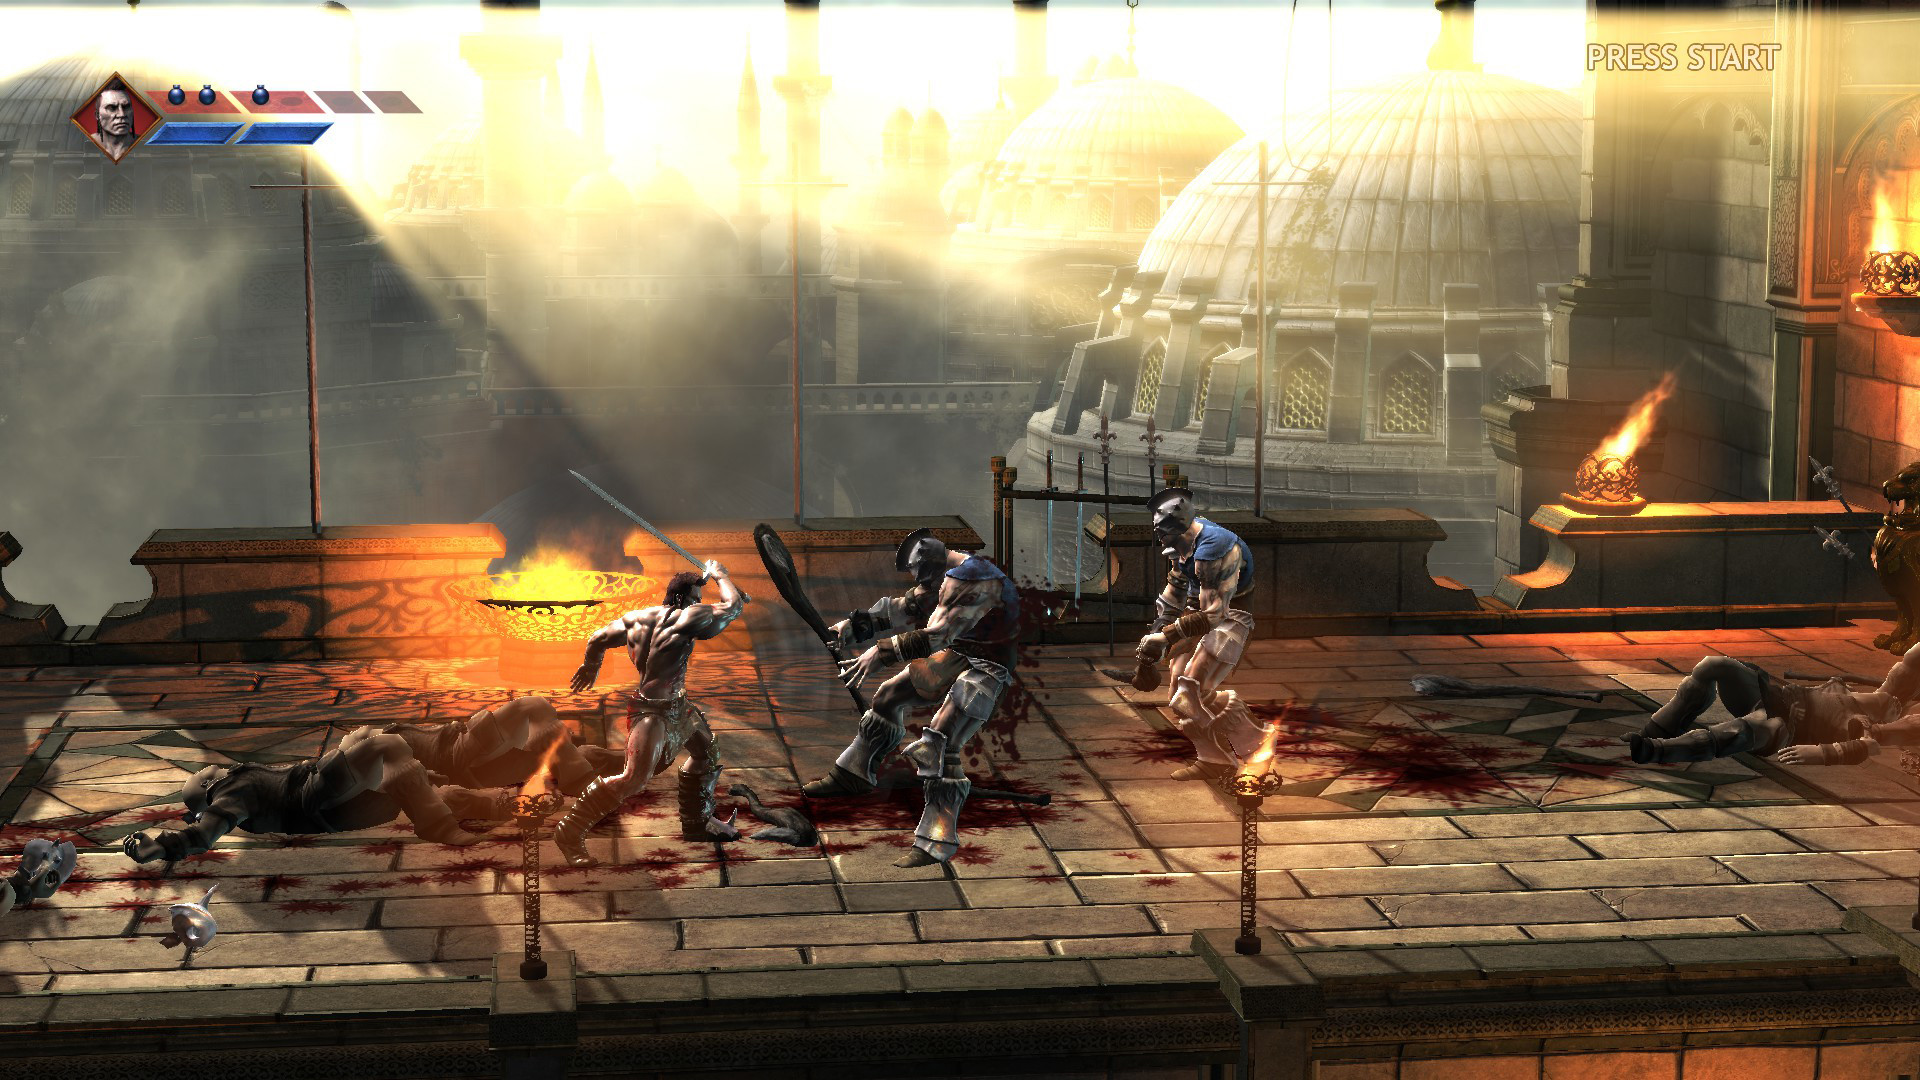 世嘉免费推出《战斧》开发原型 游戏描述惹怒开发者